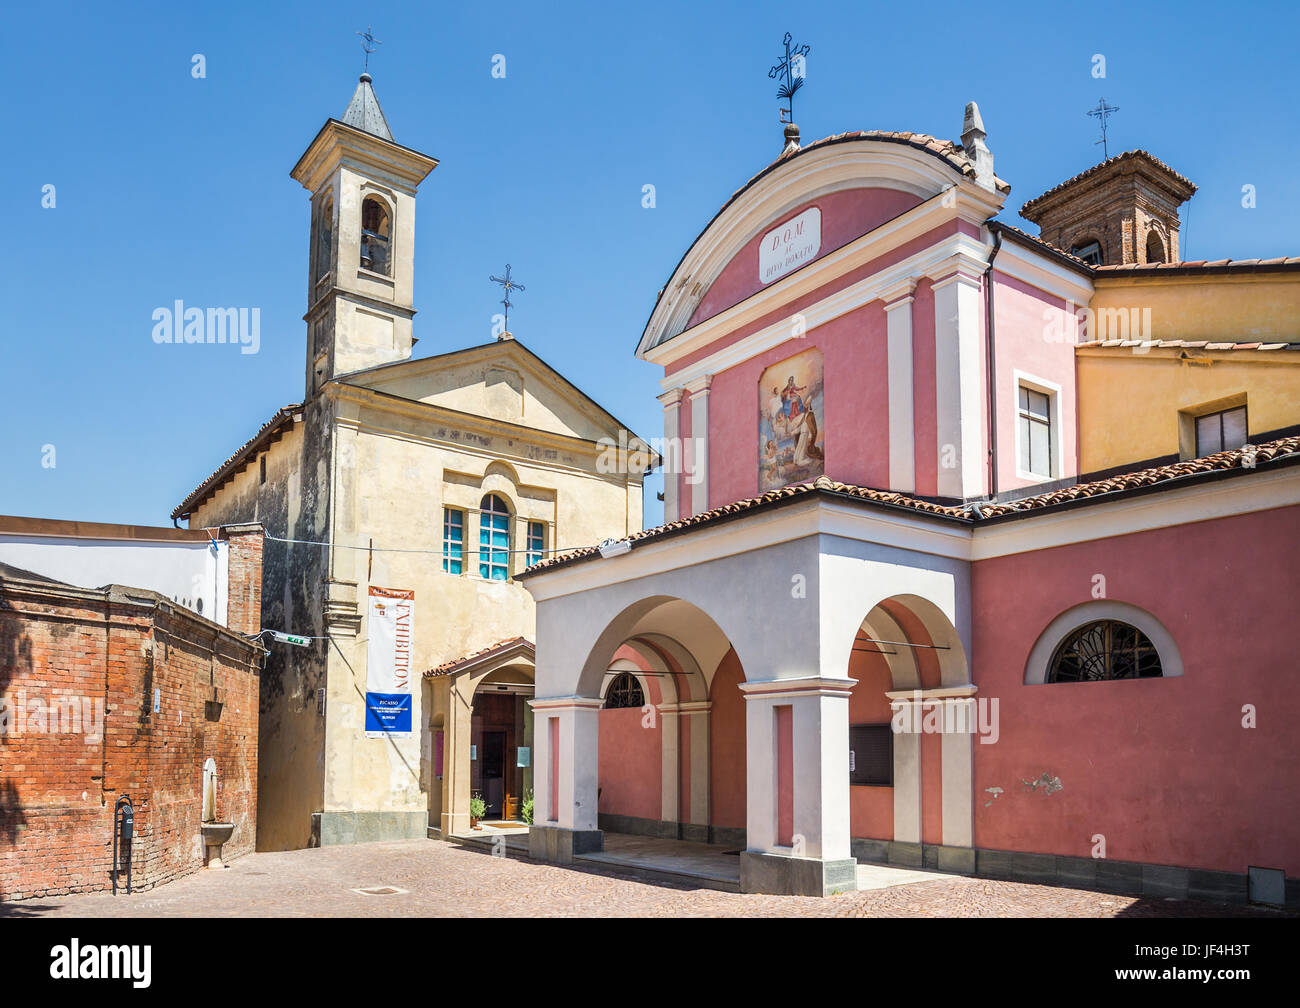 Churches in Barolo, Italy Stock Photo